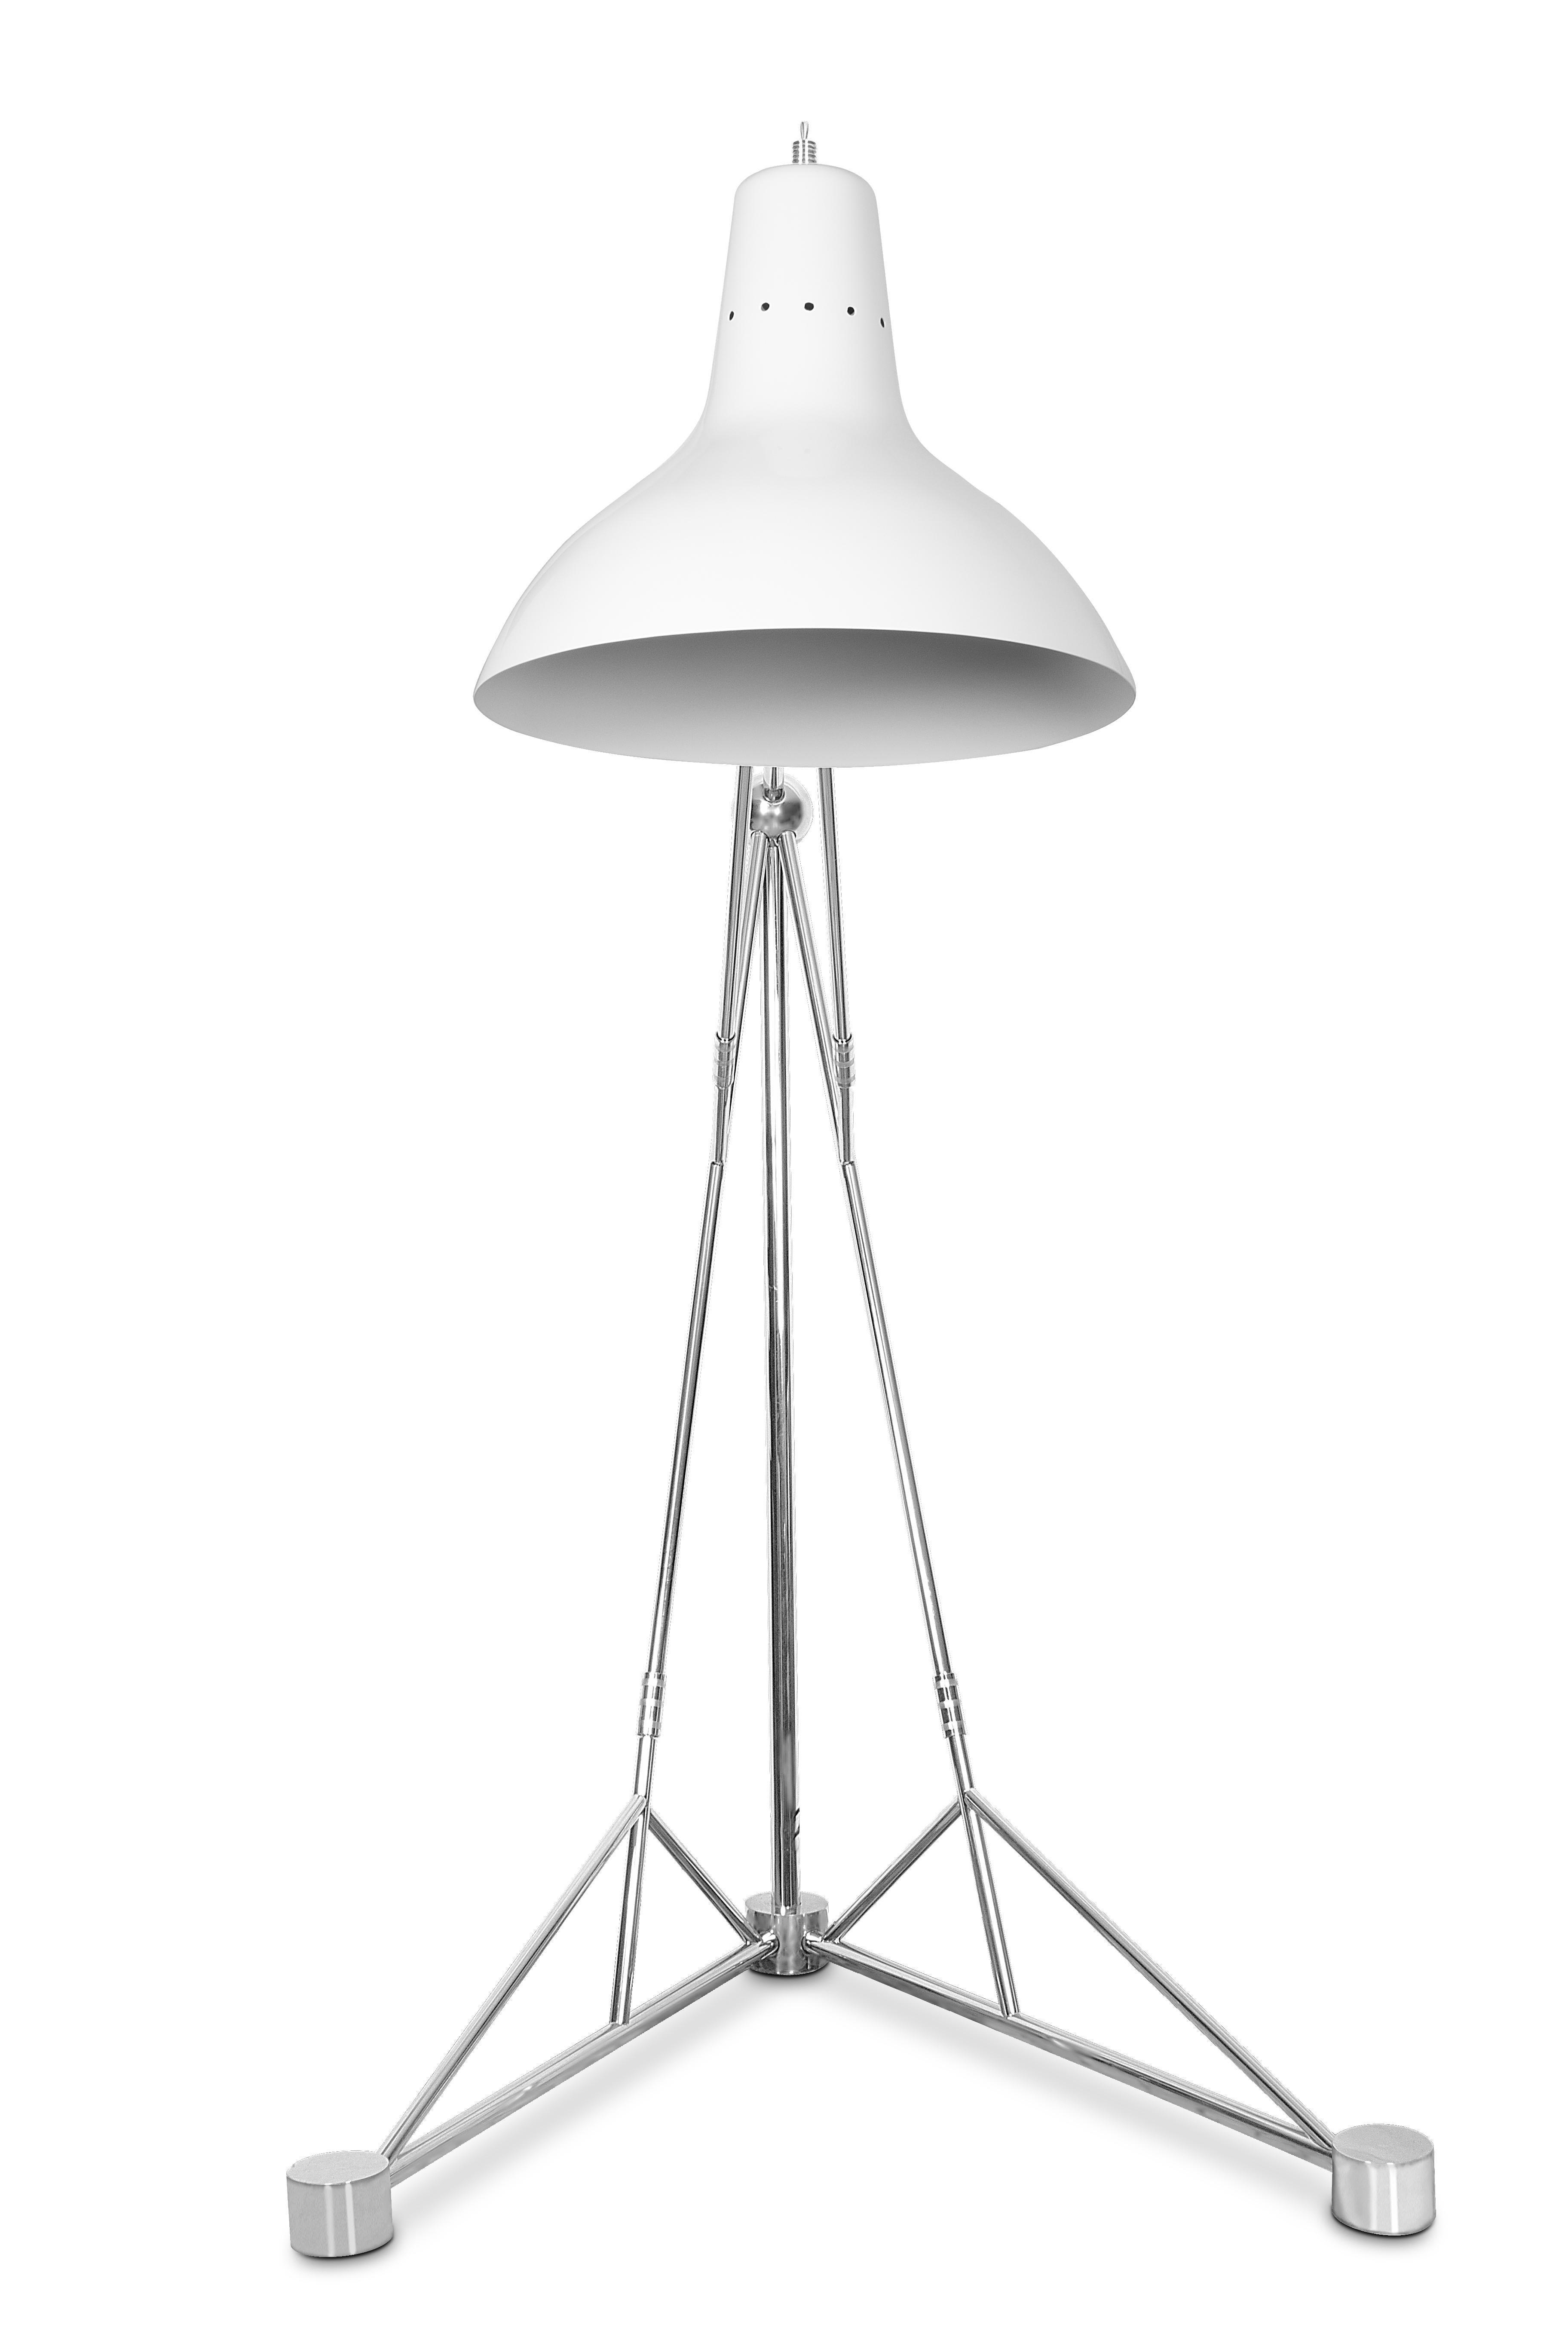 European Diana Floor Lamp in Aluminum For Sale